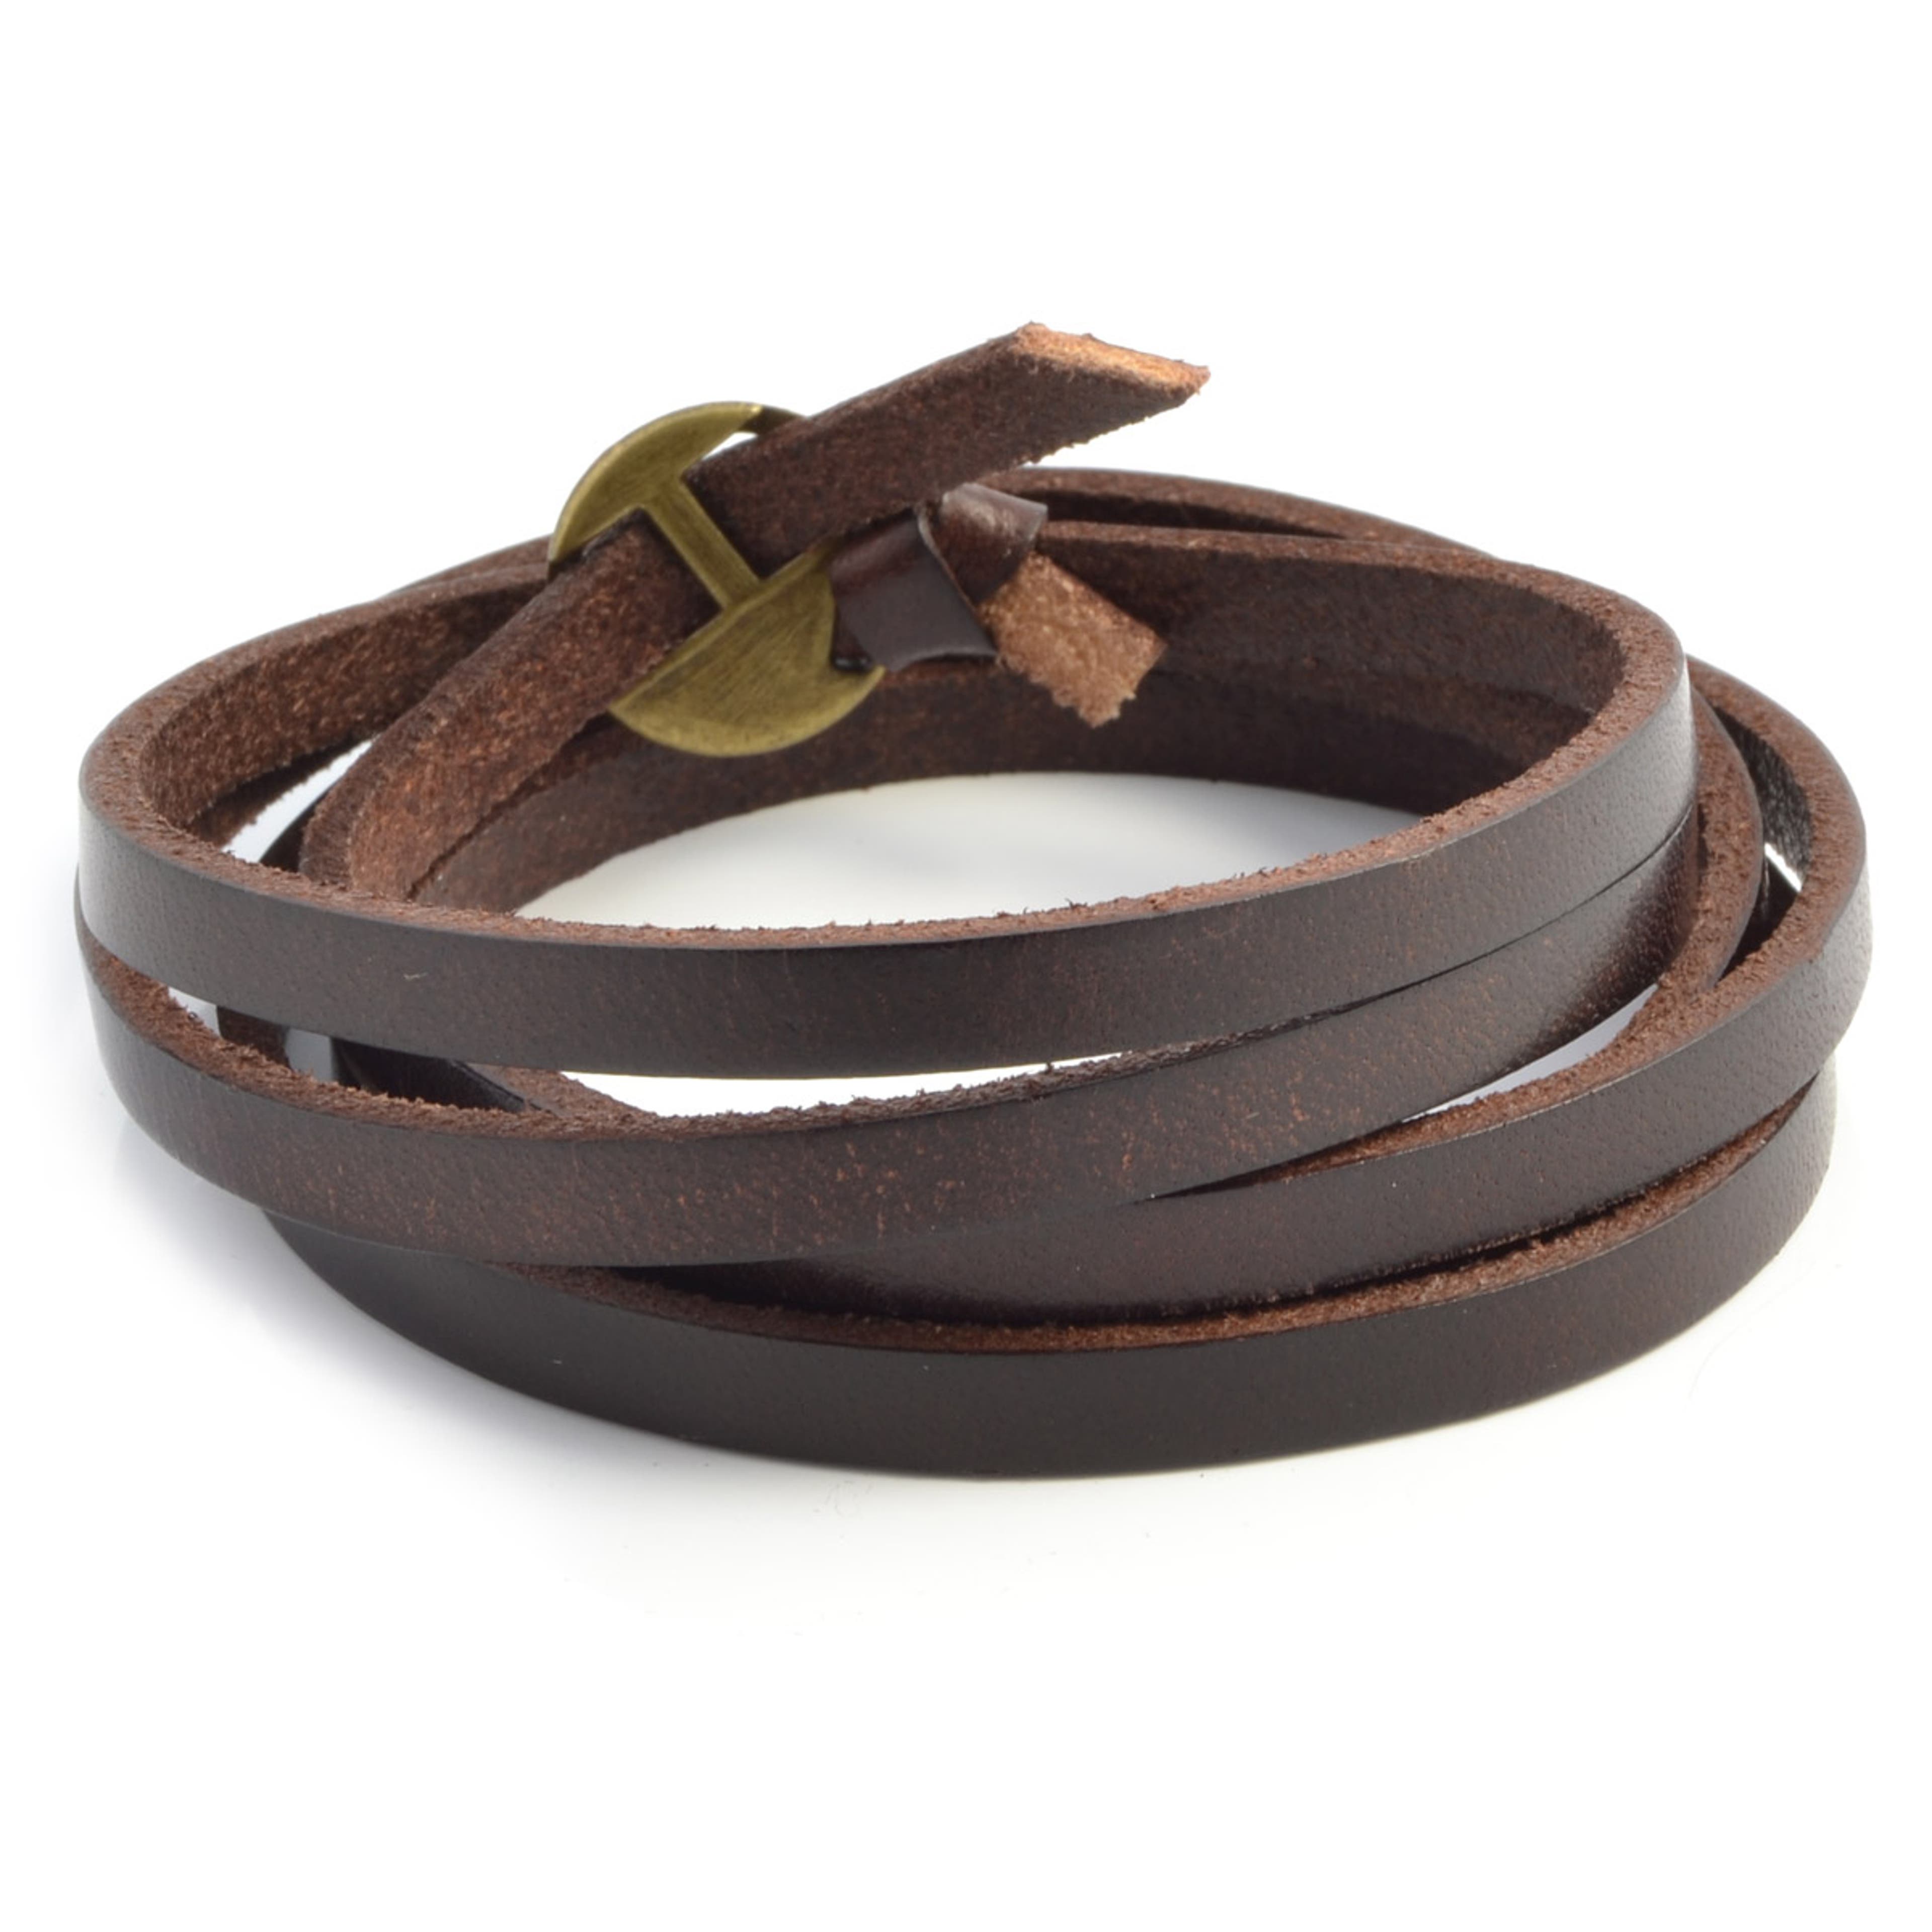 Adjustable Loved Shredded Leather Double Wrap Bracelet